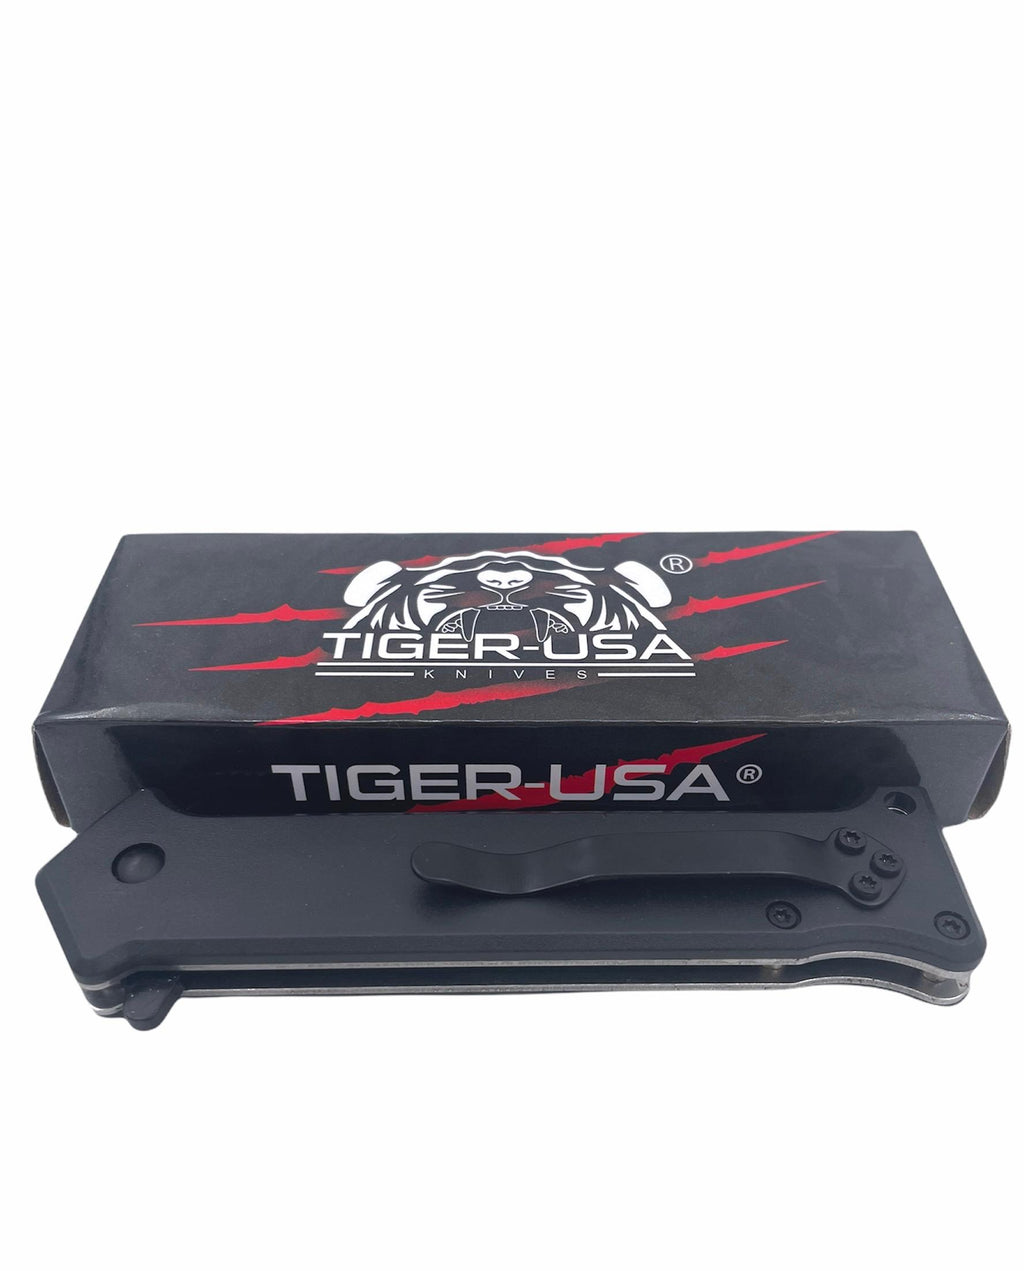 Tiger-USA Spring Assisted Knife - DEER USA FLAG